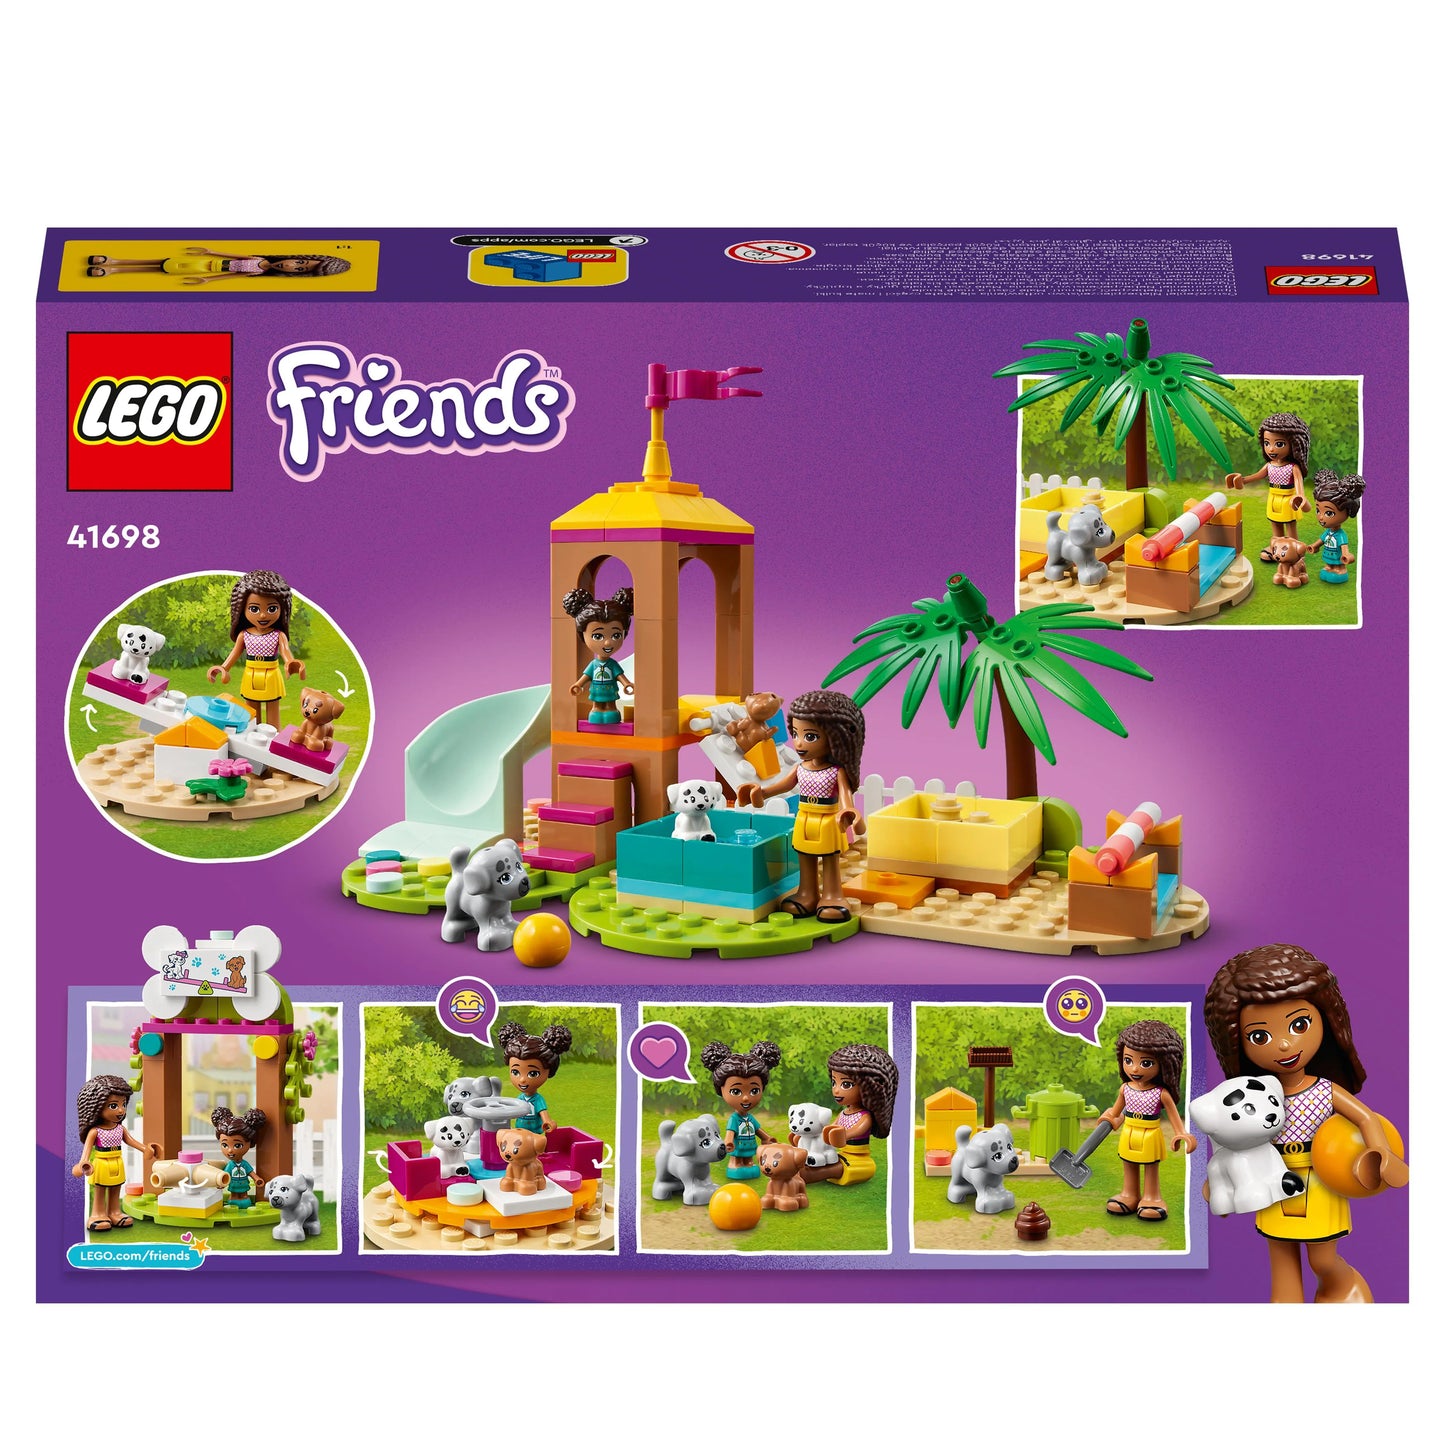 Dierenspeeltuin-LEGO Friends